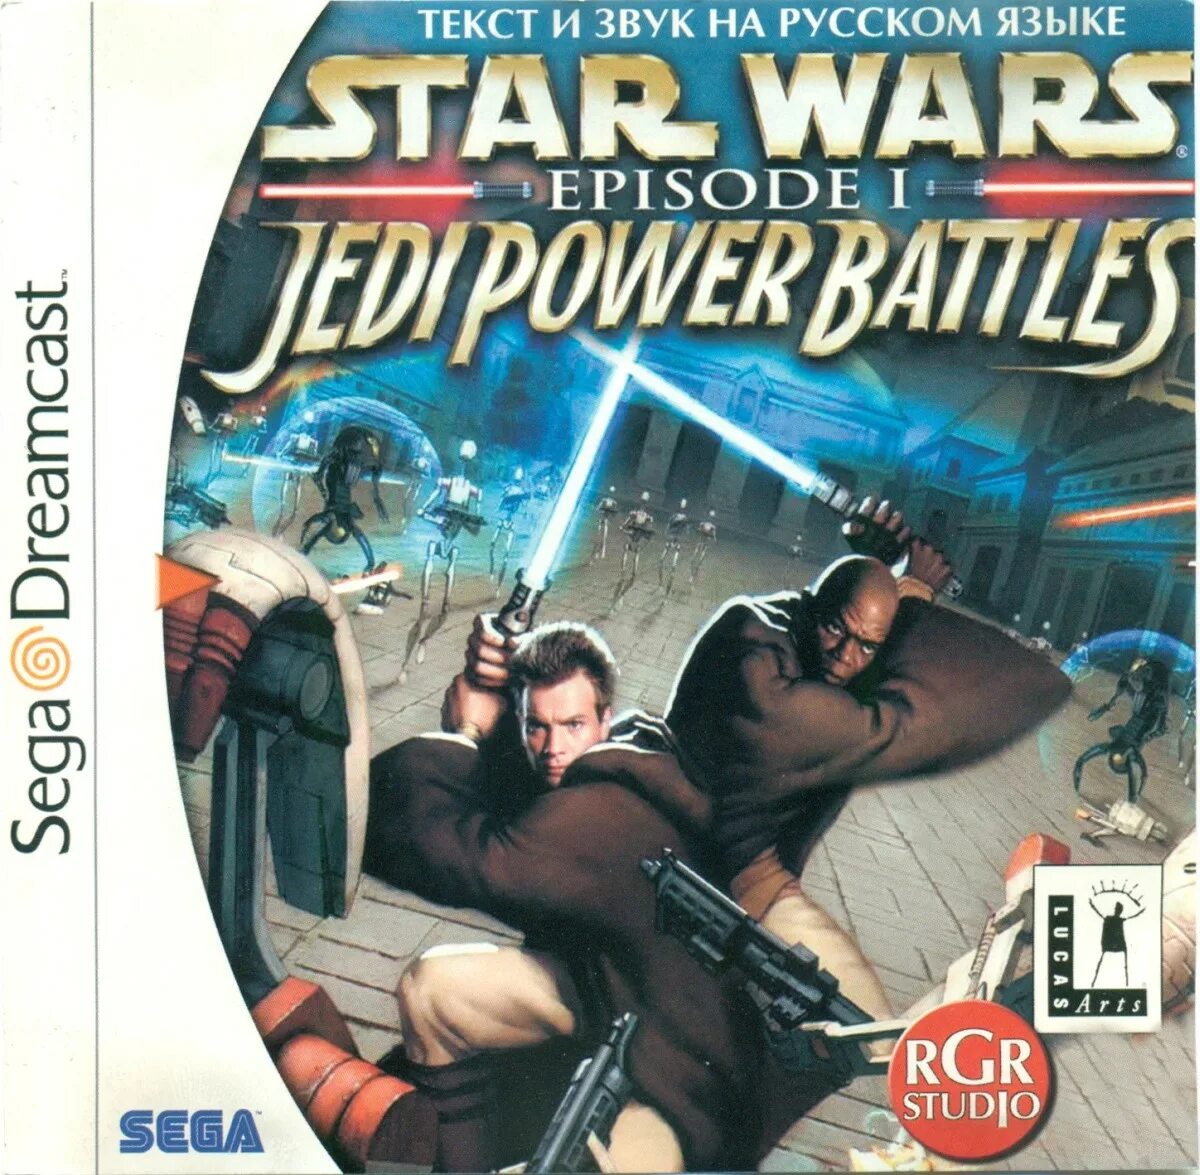 Star wars jedi power. Sega Dreamcast Star Wars Episode 1. Star Wars Episode 1 Jedi Power Battles. Star Wars Episode i Jedi Power Battles ps1. Star Wars Jedi Power Battles ps1 Disc.